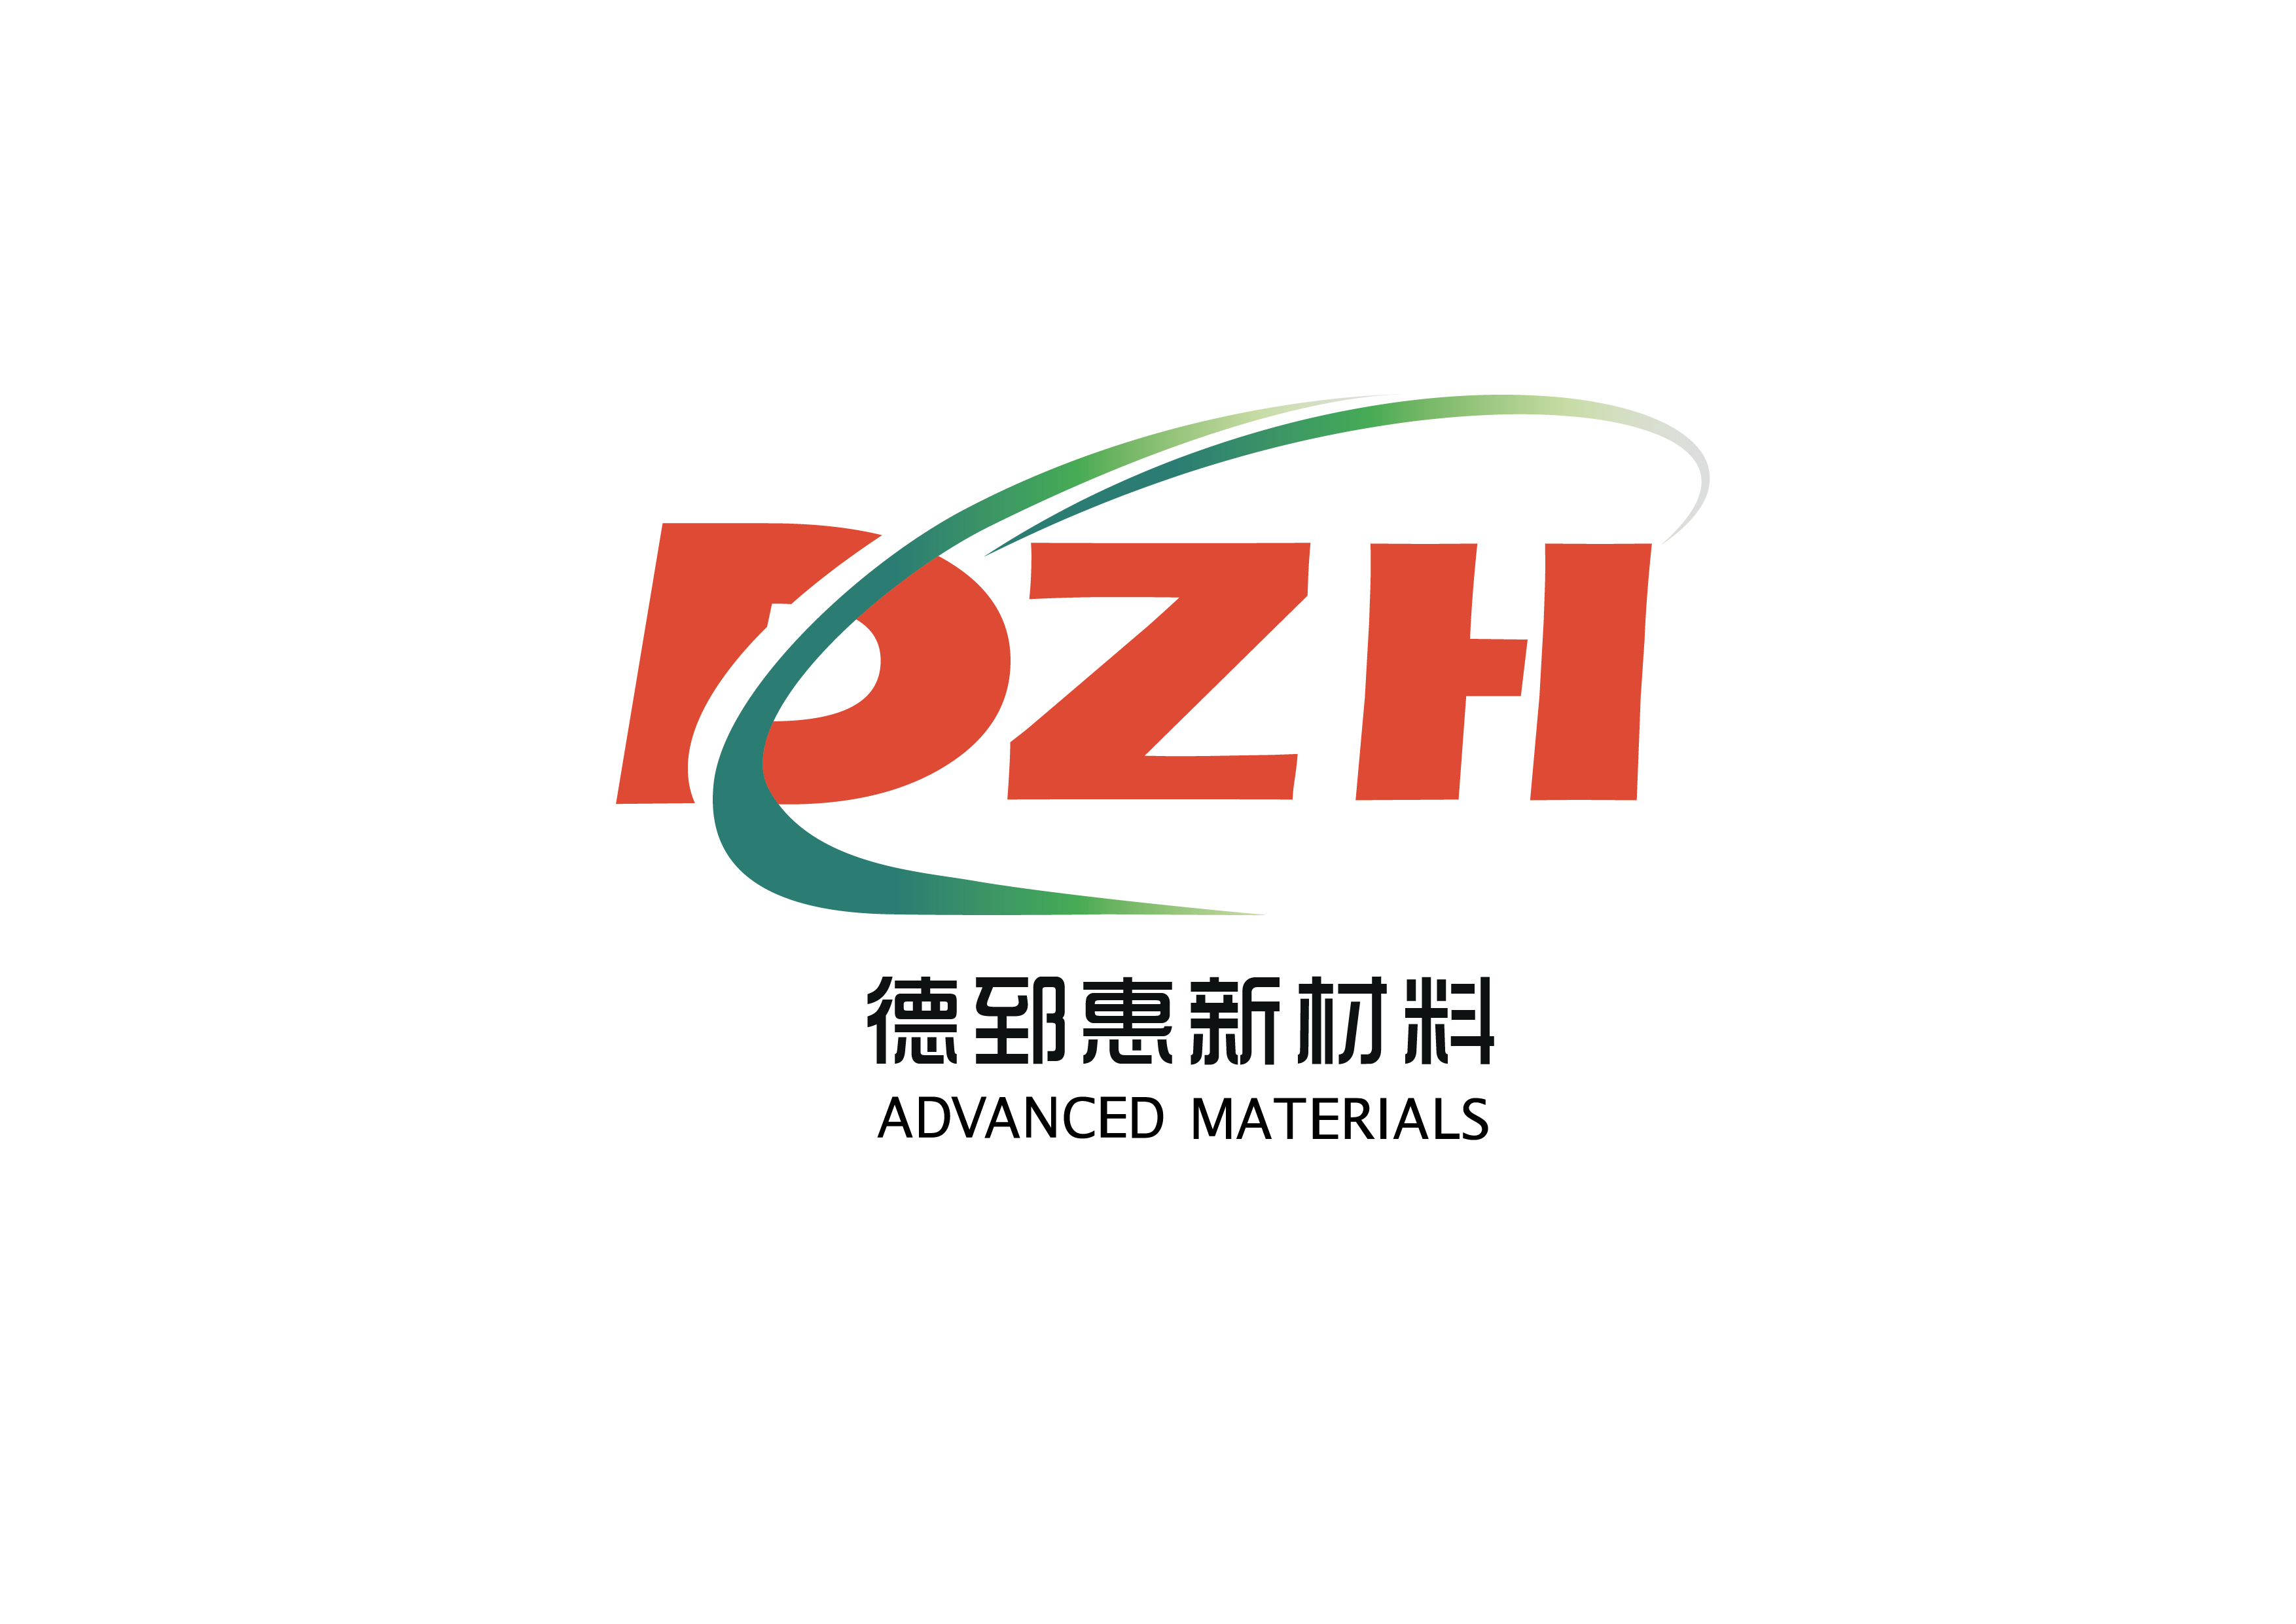 Guangzhou Dezhihui Advanced Materials Co, Ltd.